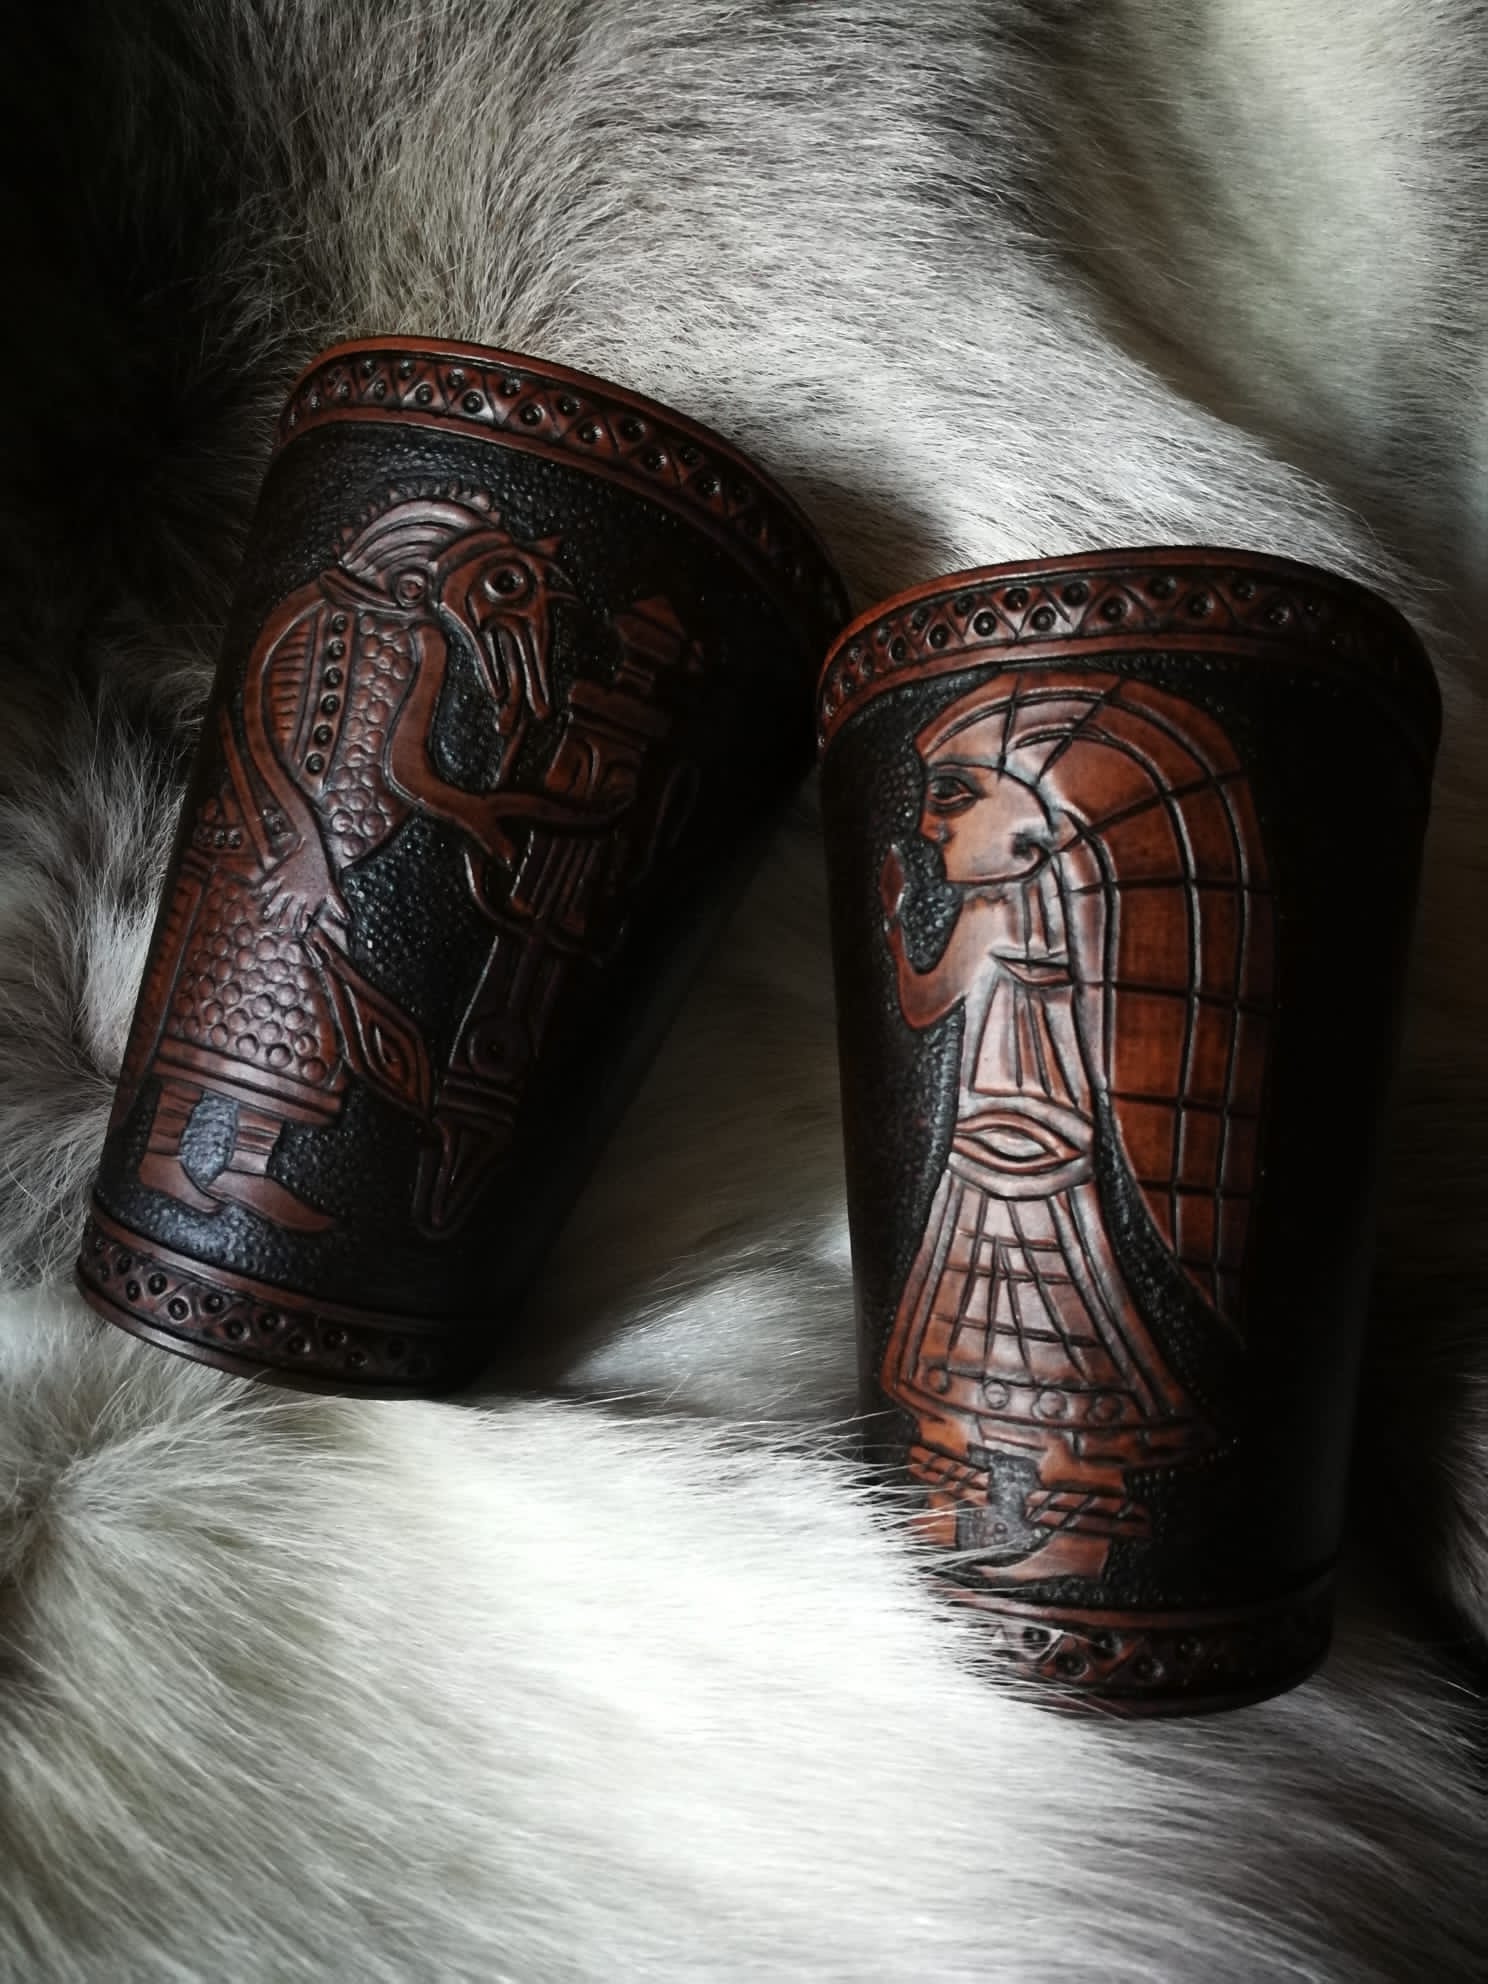 Coppia di bracciali in cuoio lavorati a sbalzo dedicati alla mitologia Winnili.